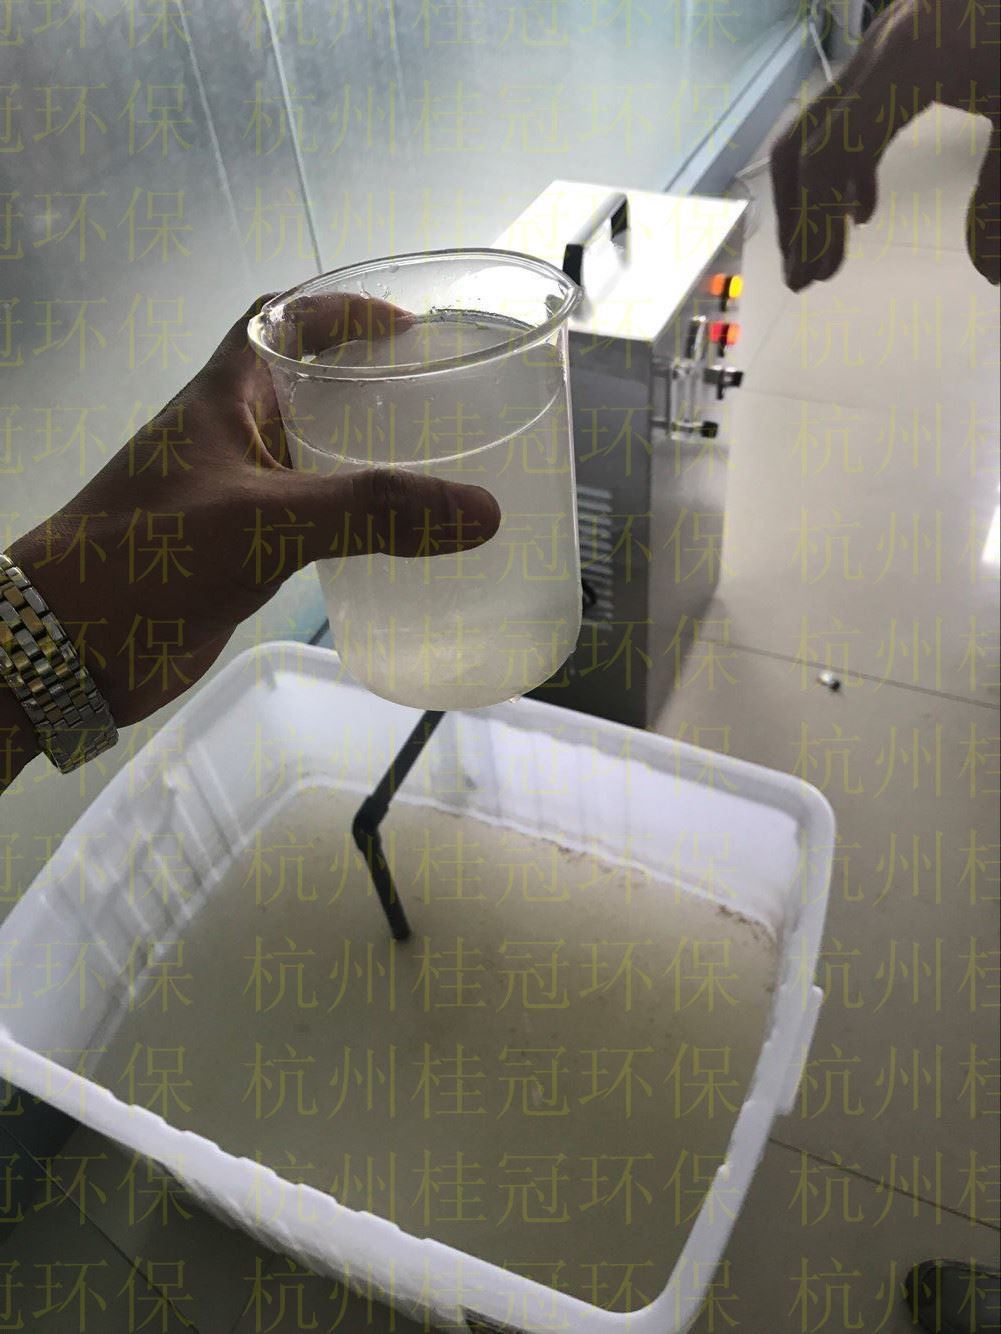 杭州桂冠环保的中心技术装备——微纳米气泡发生器